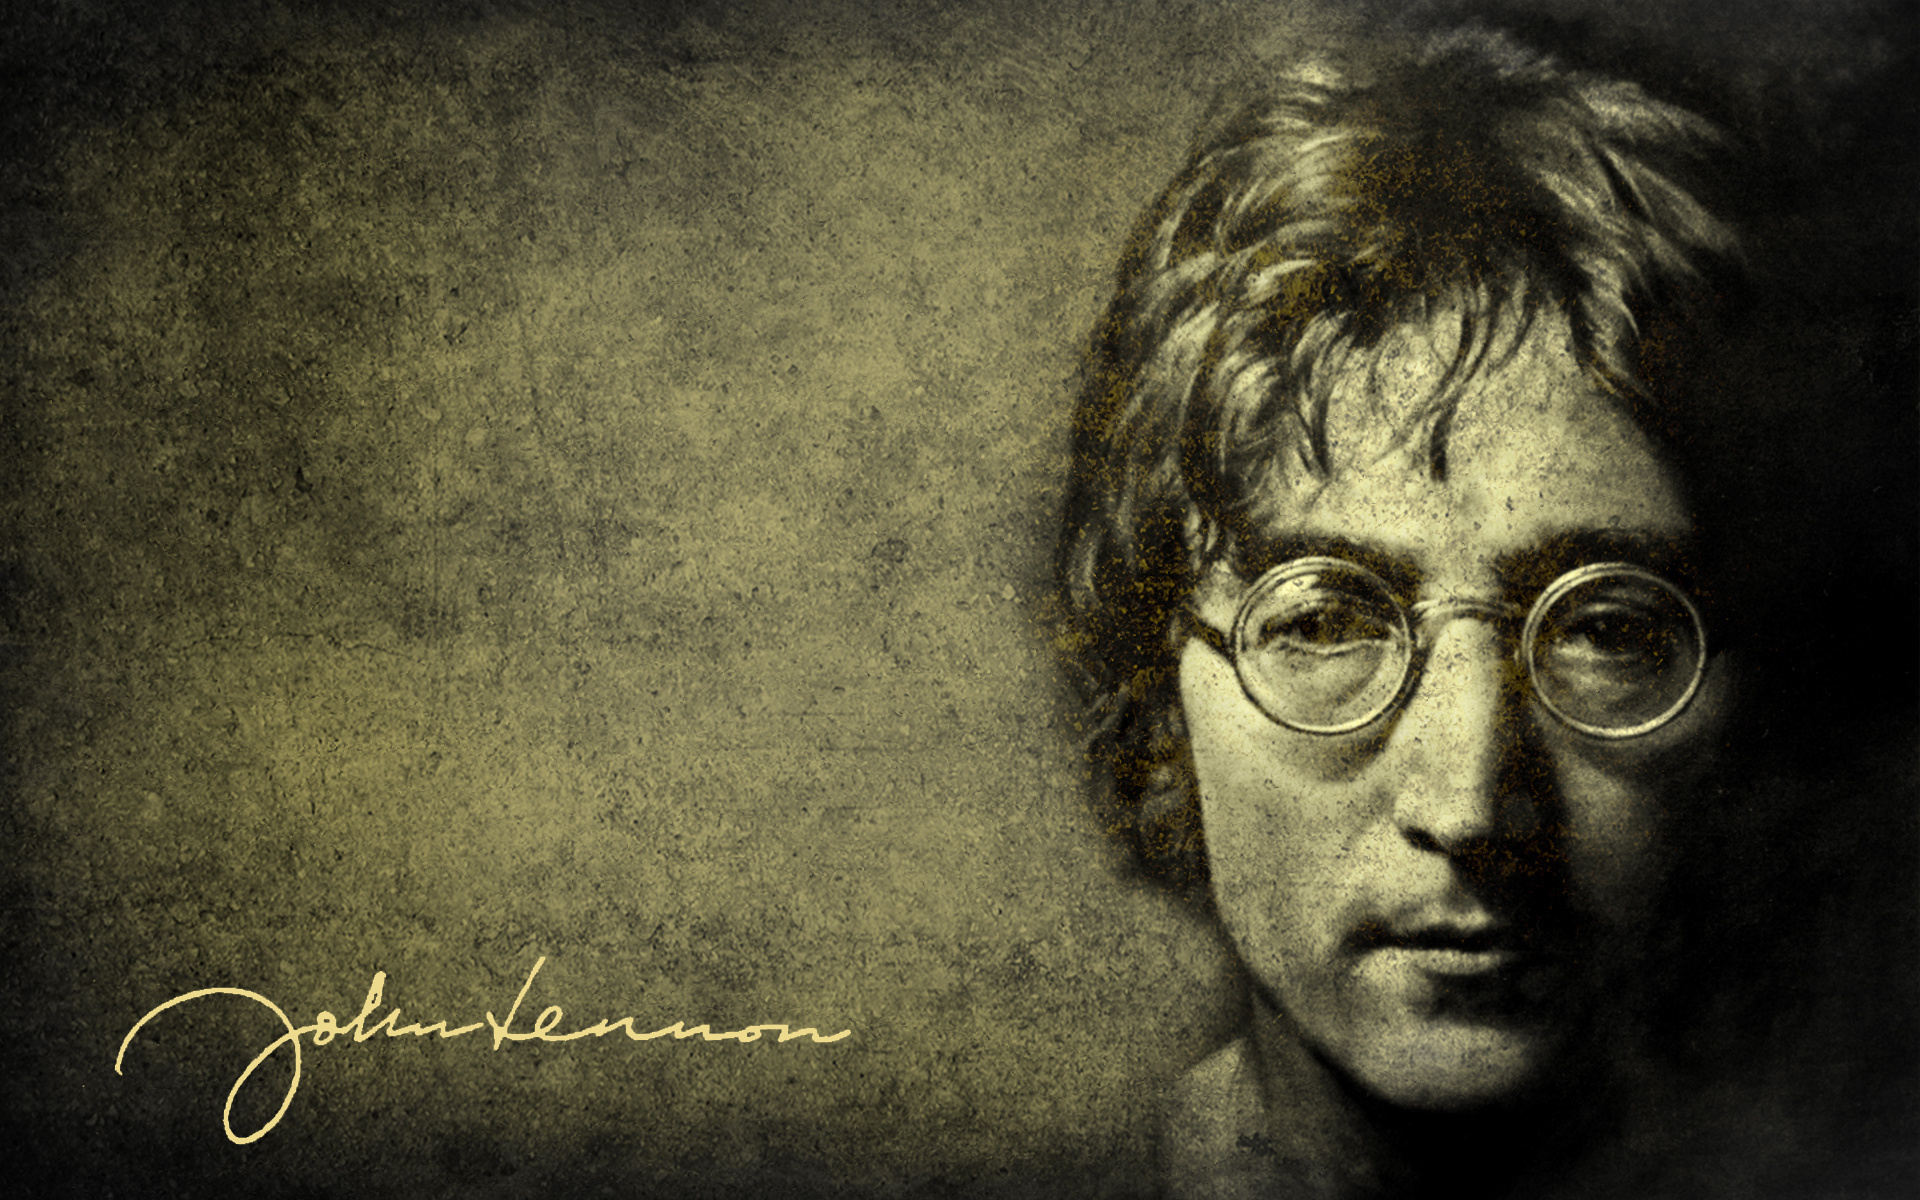 Kiderült, hogy John Lennon ufókkal találkozott!